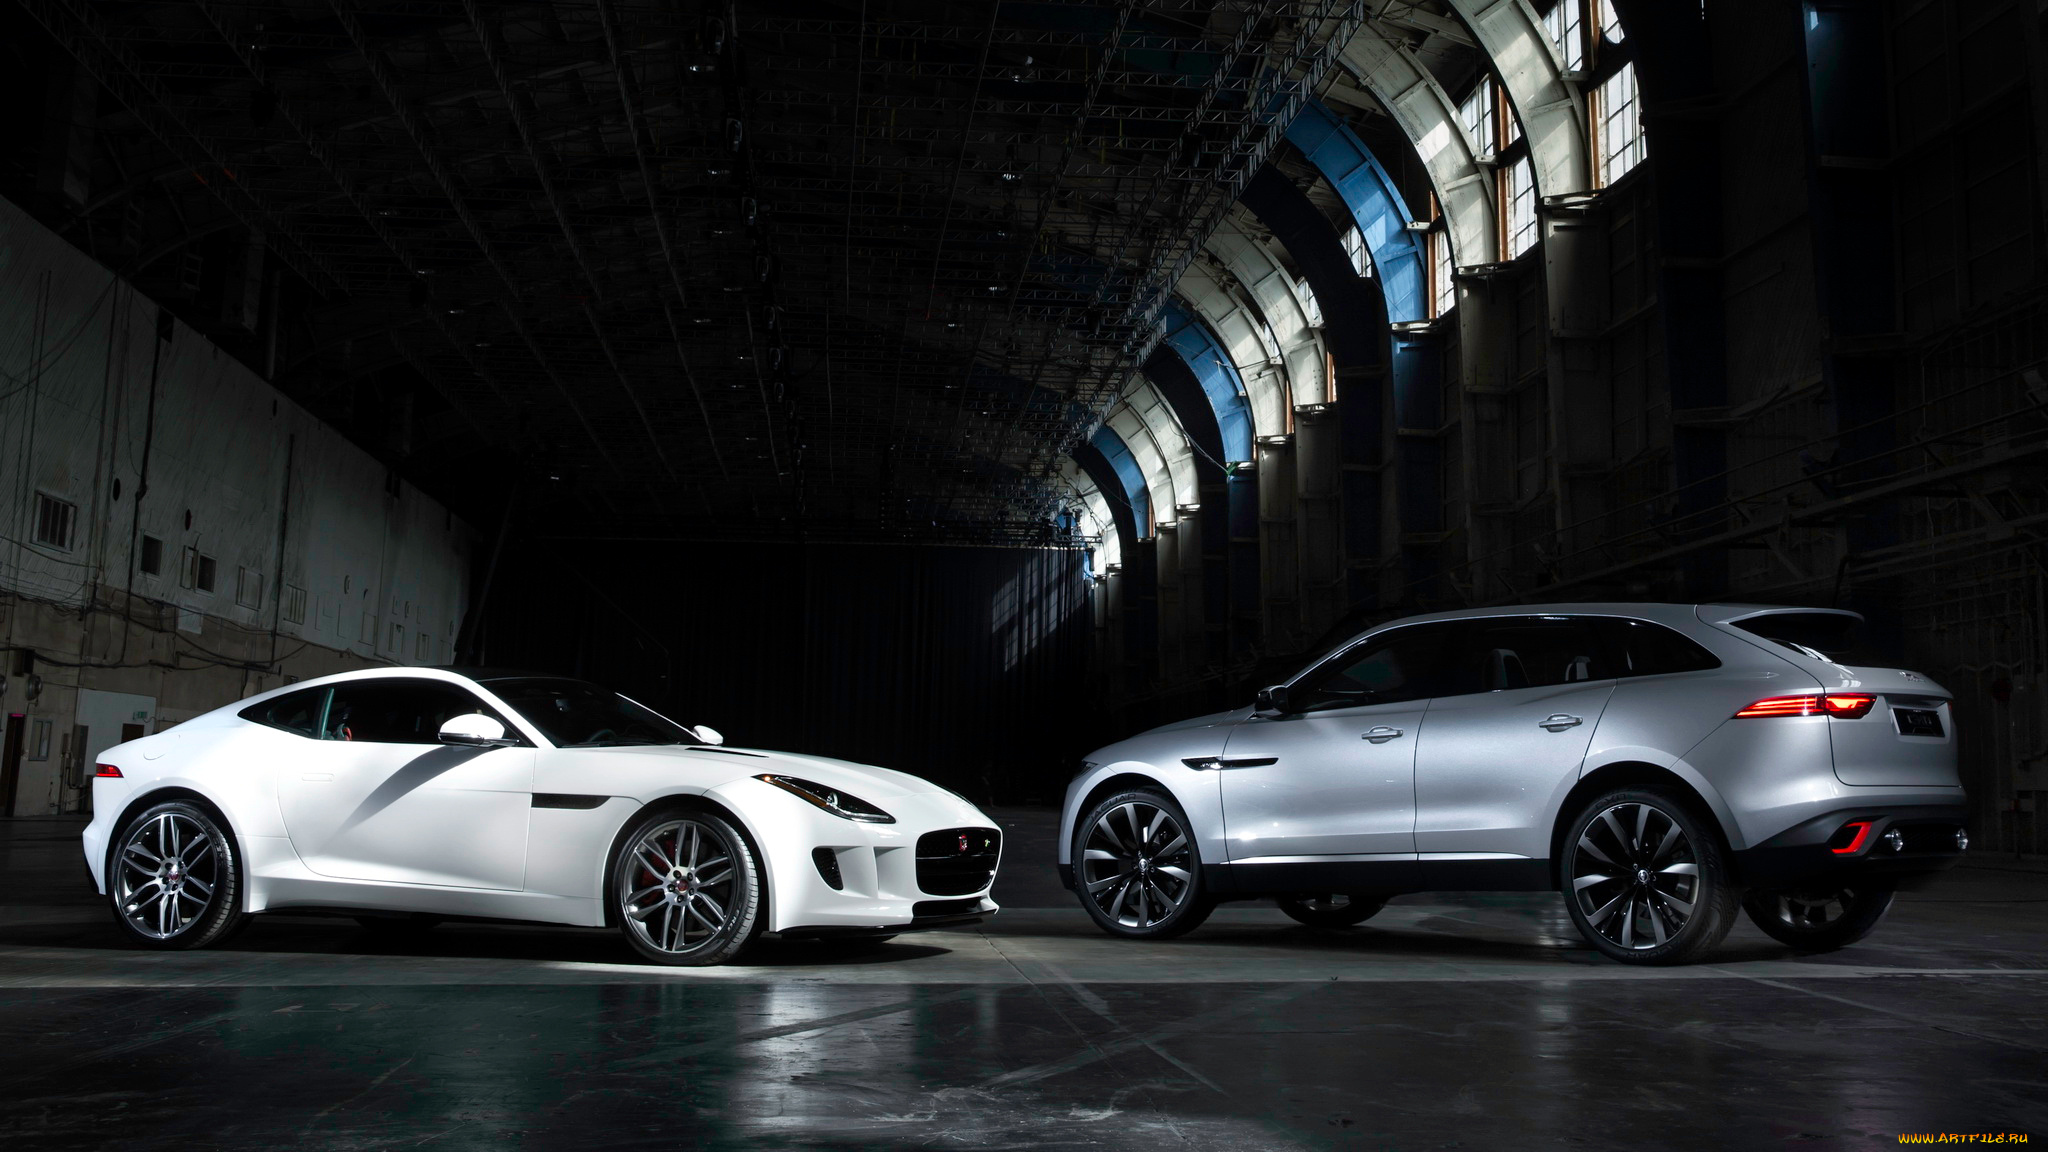 jaguar, автомобили, легковые, класс-люкс, великобритания, land, rover, ltd